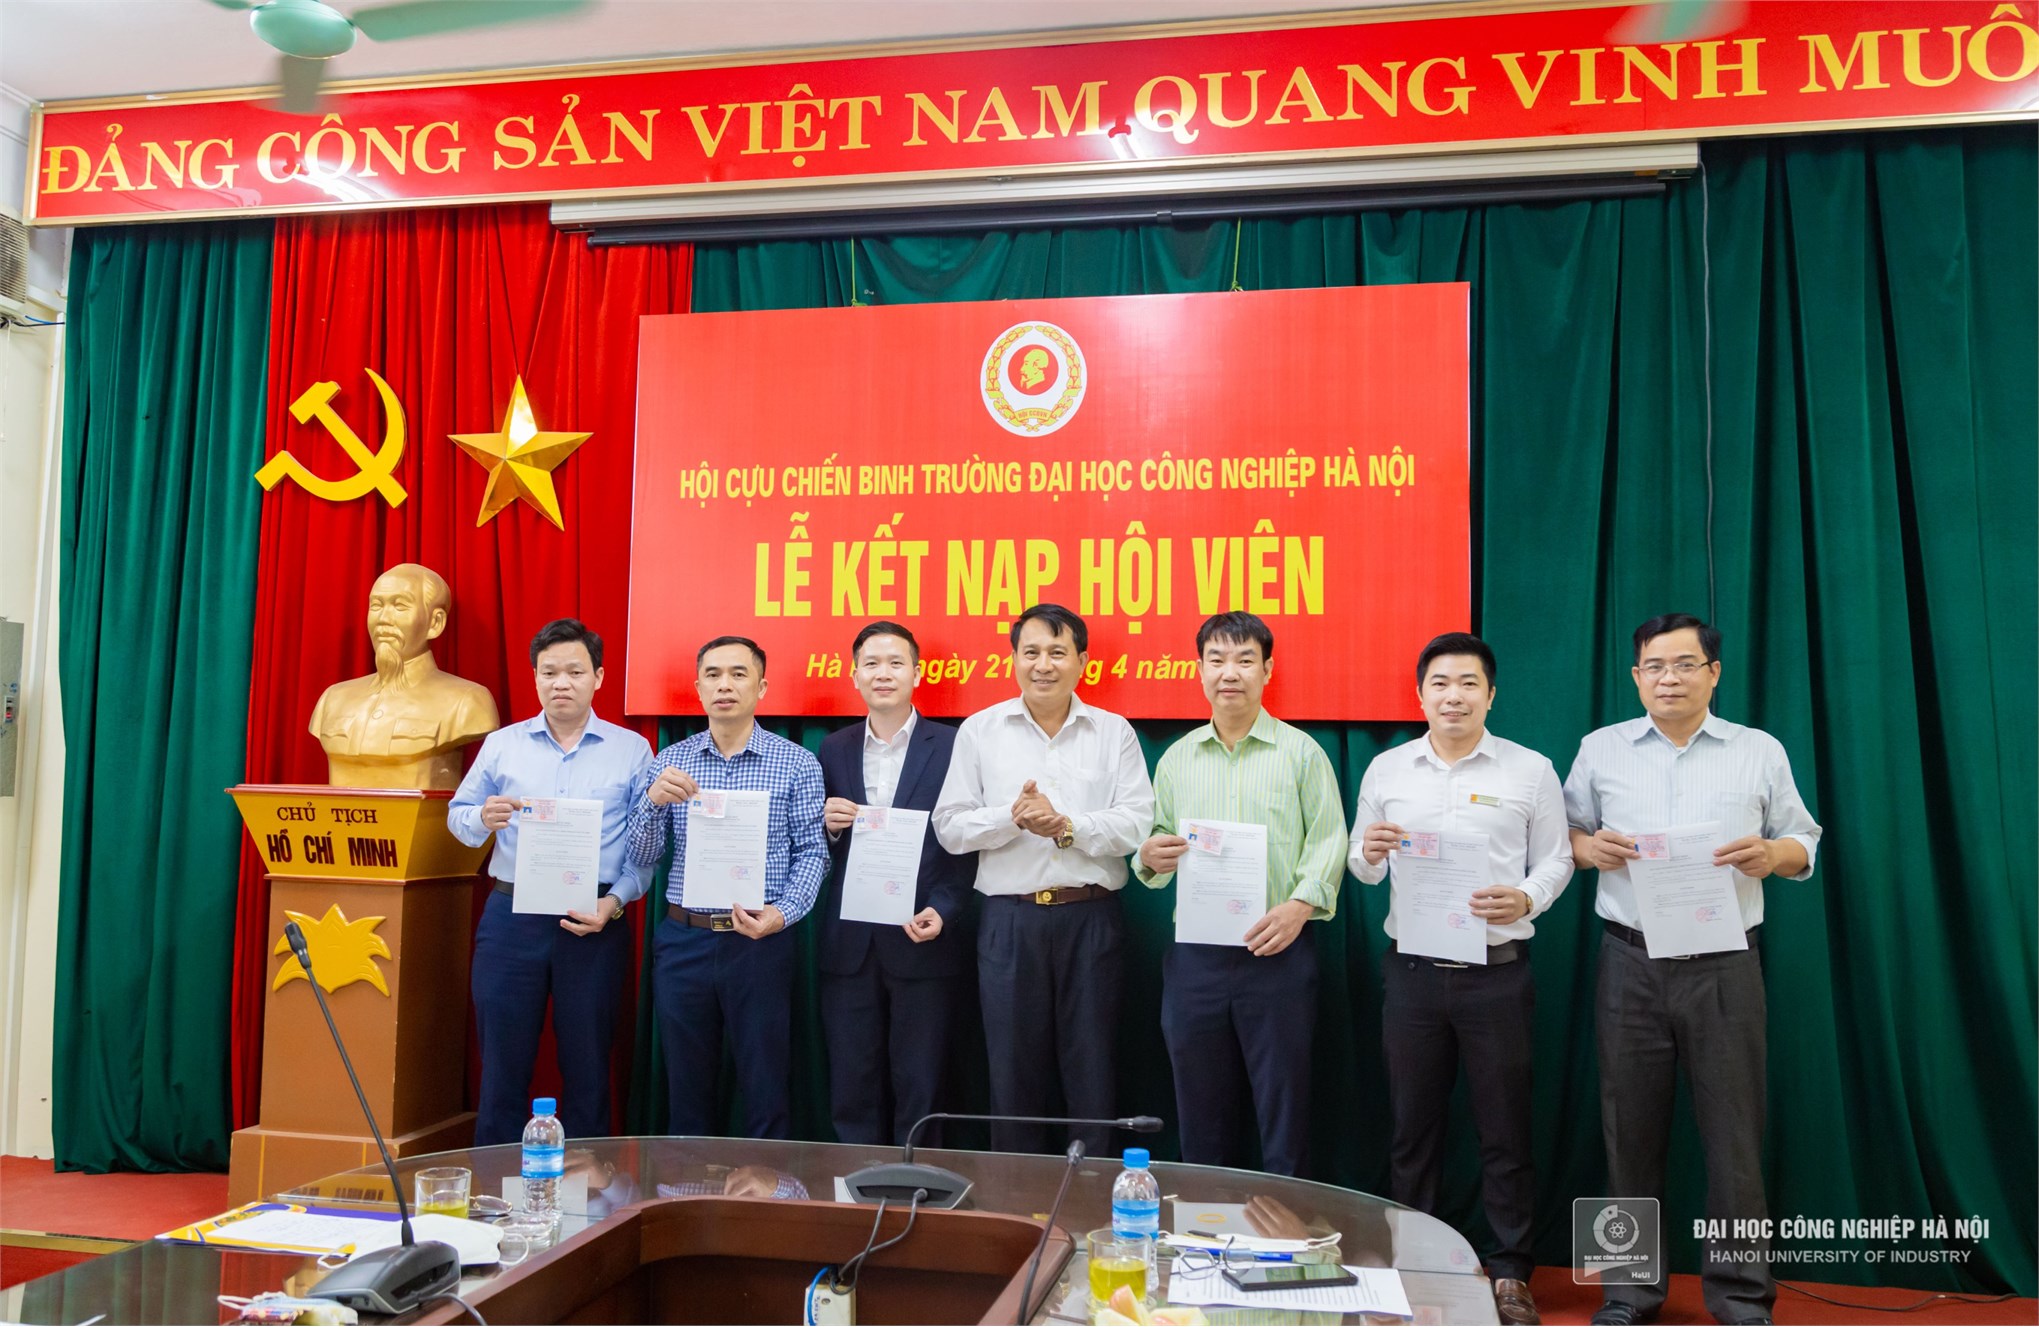 Hội cựu chiến binh Đại học Công nghiệp Hà Nội kết nạp hội viên mới